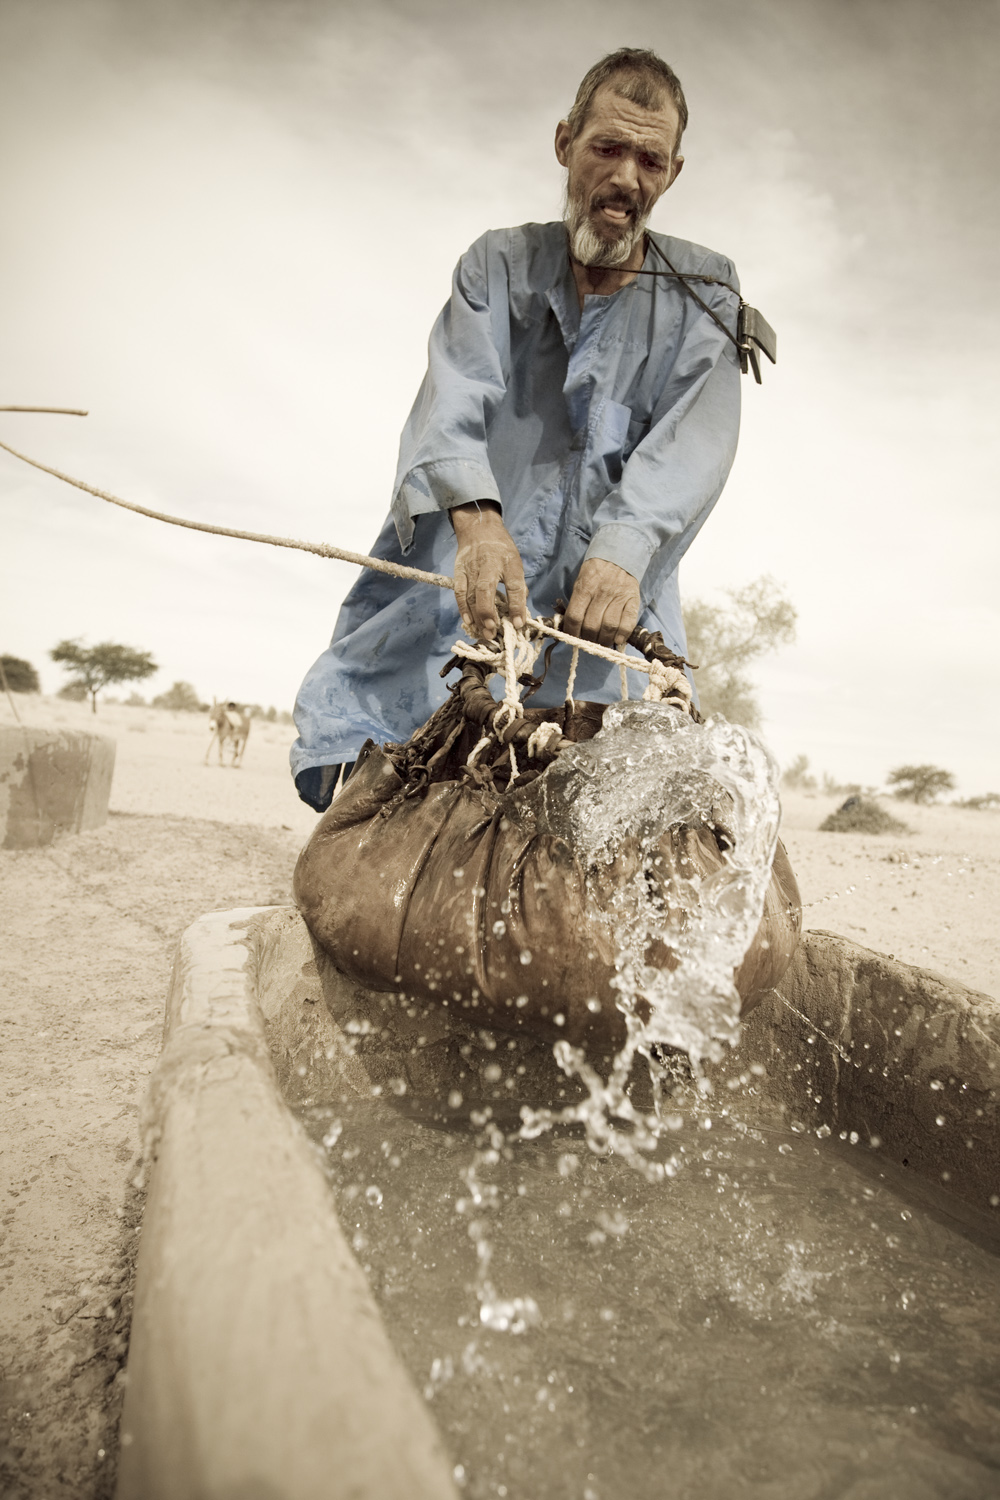 Climate change in Mali. Klimatförändring i Mali. Foto fotograf Johanna Henriksson. Climate Change.